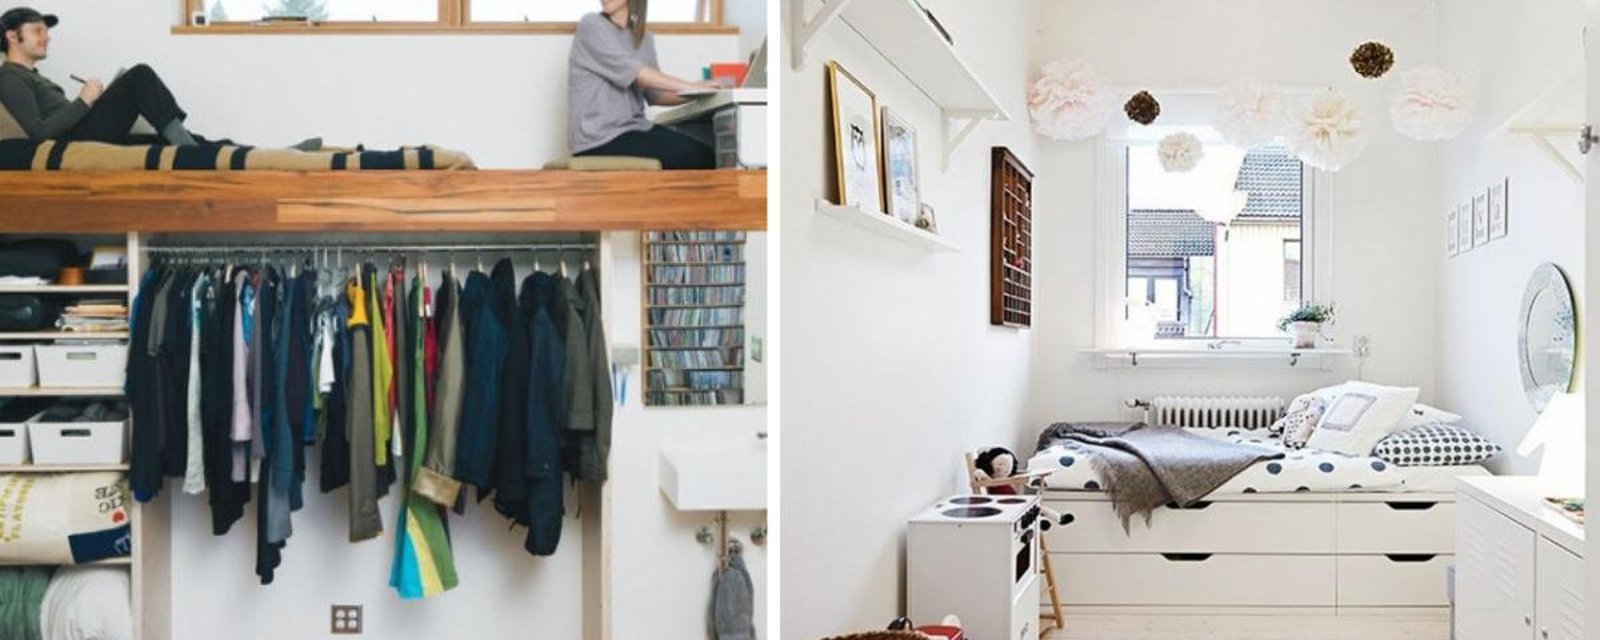 20 idées fantastiques pour transformer une petite pièce en chambre chaleureuse